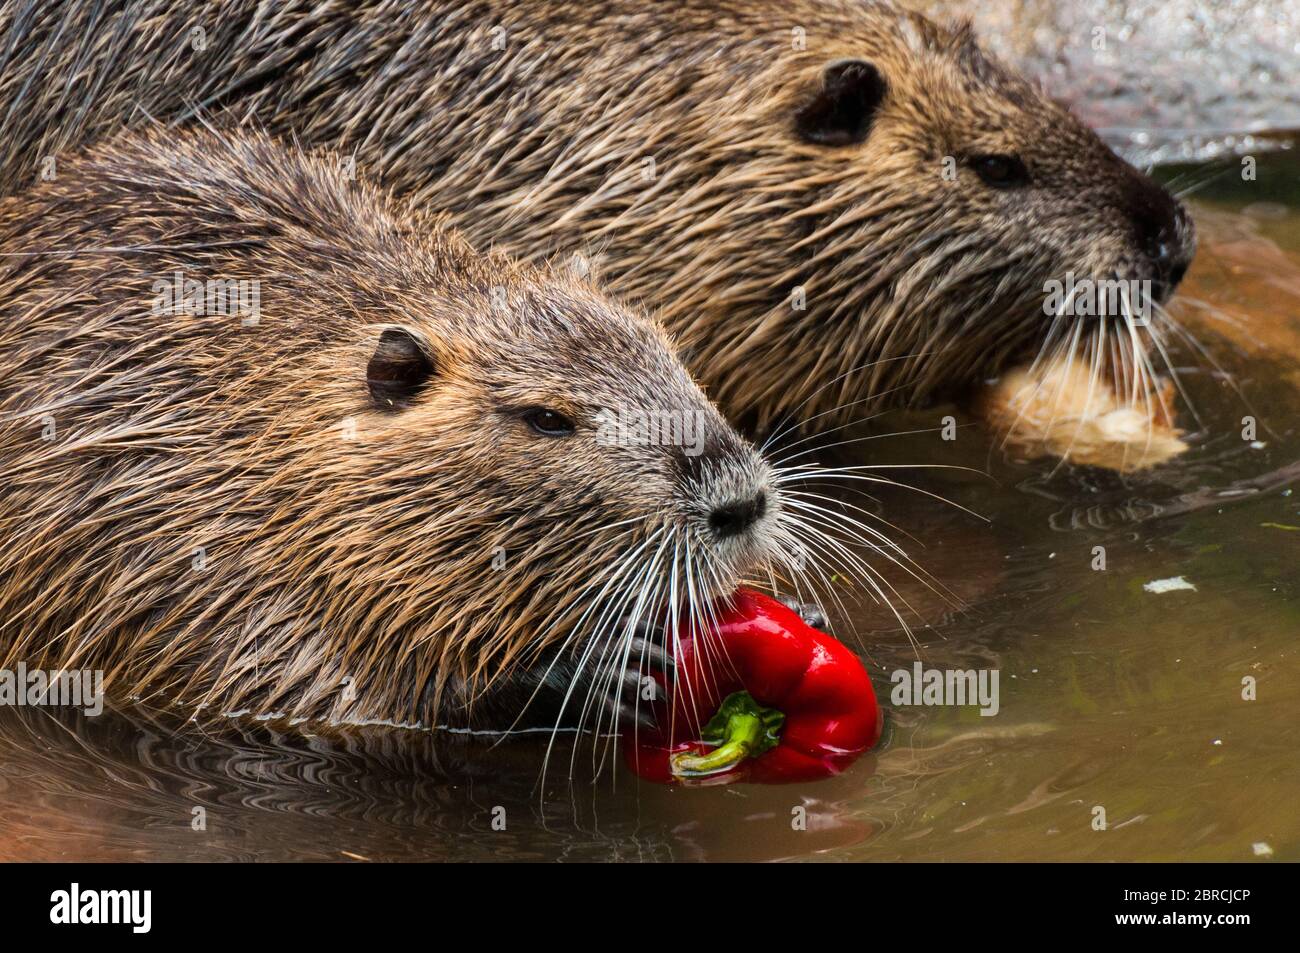 Two nutrias eat a paprika Stock Photo